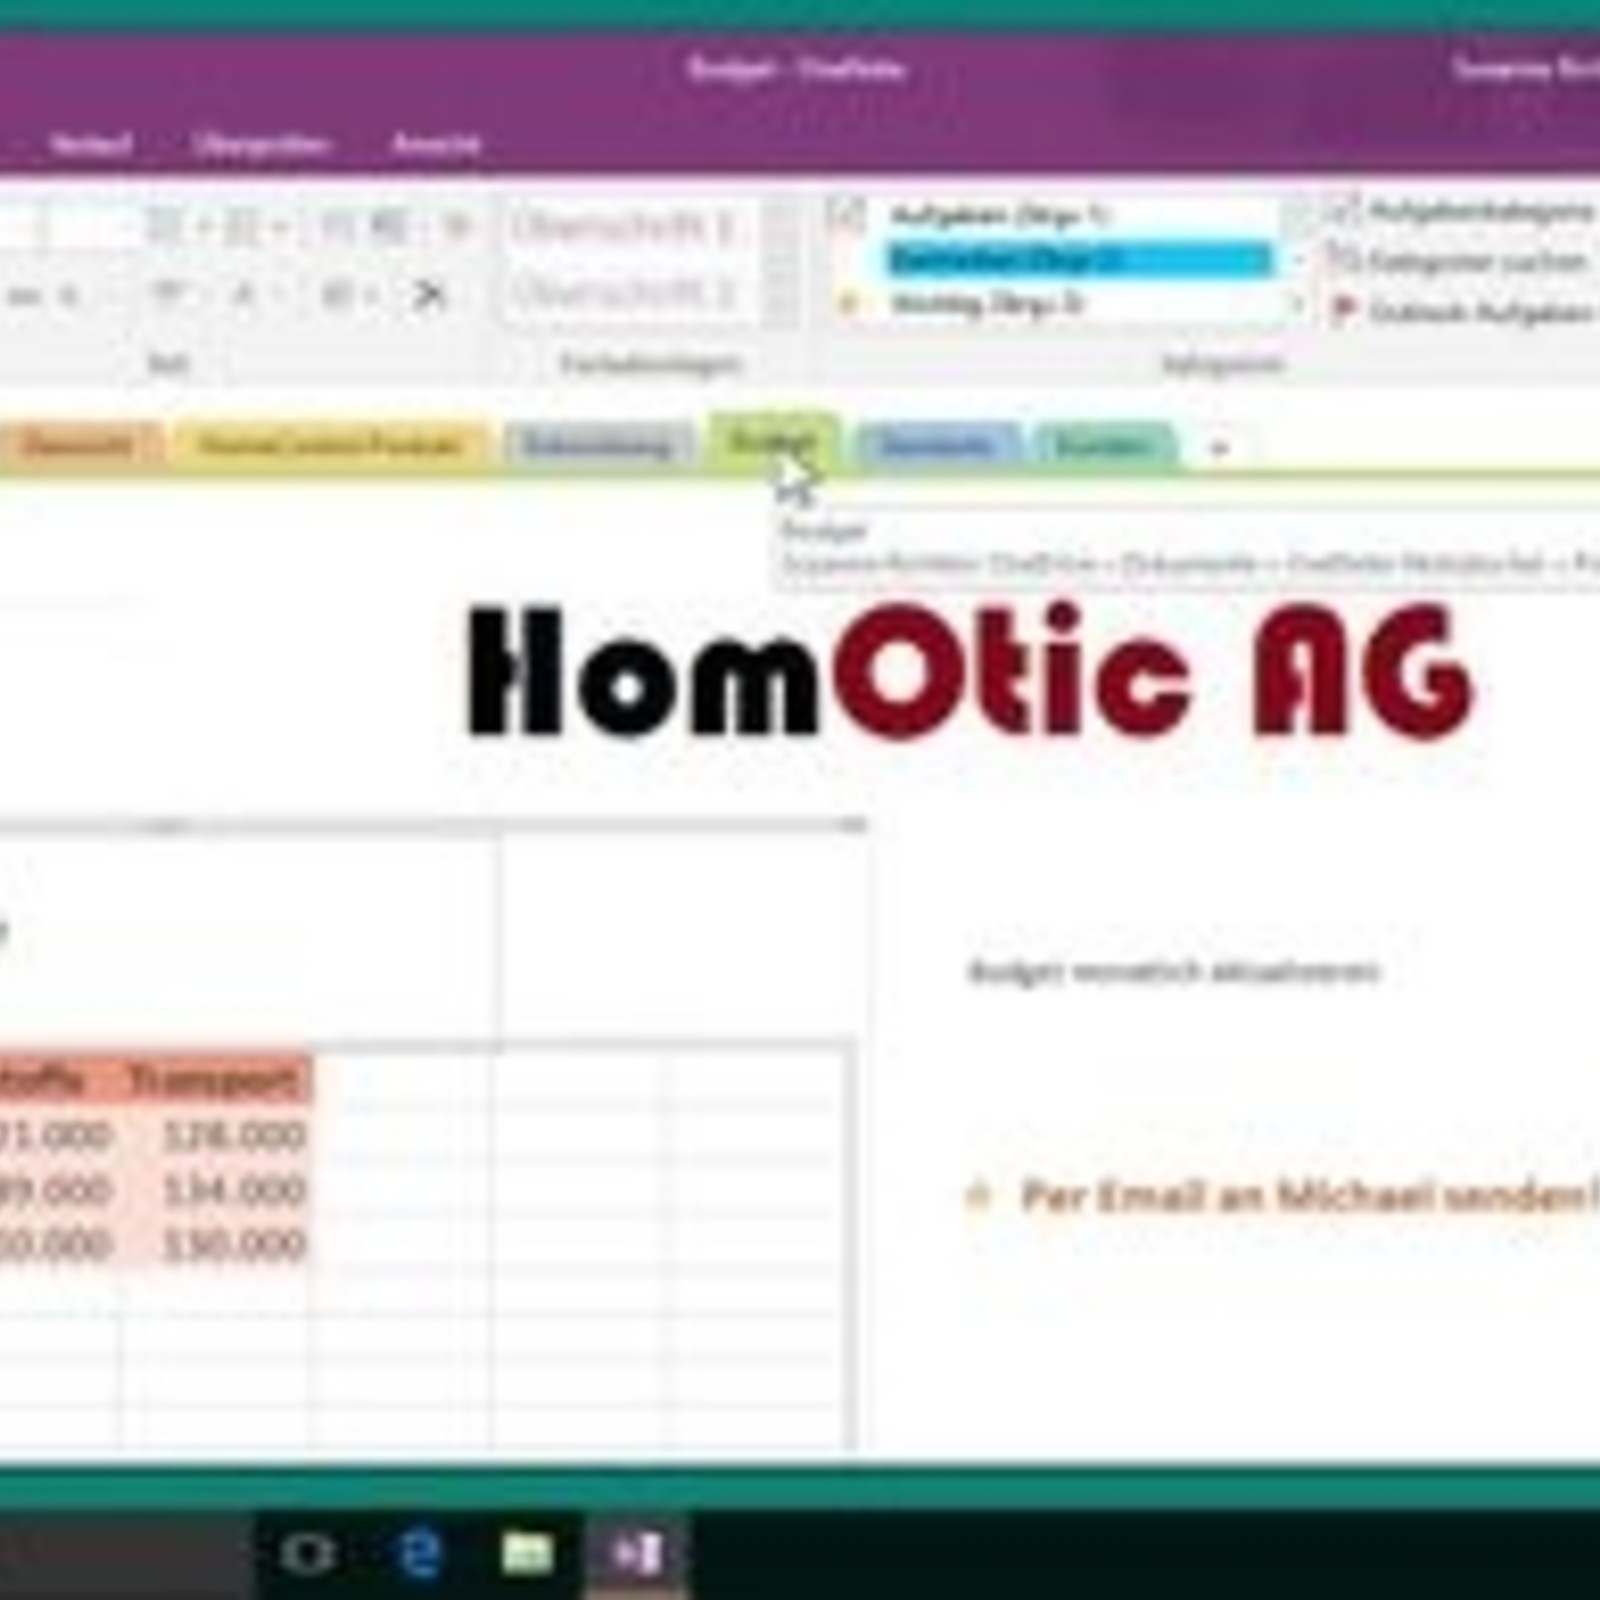 Microsoft OneNote Kurs OneNote 2016 E-Learning